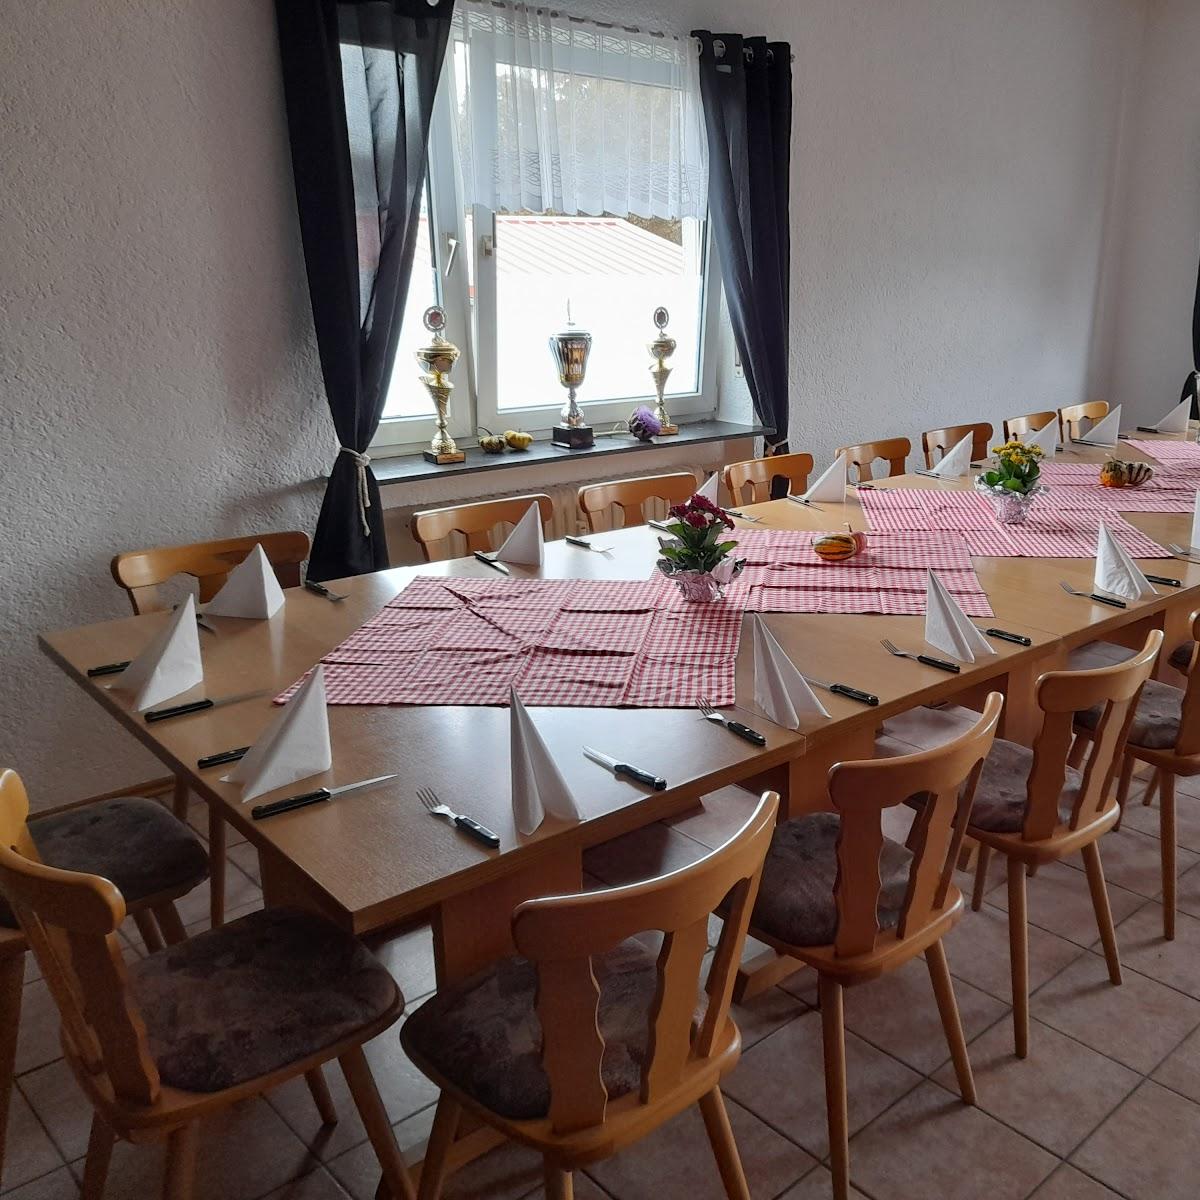 Restaurant "XXL Schnitzel Haus" in Speyer